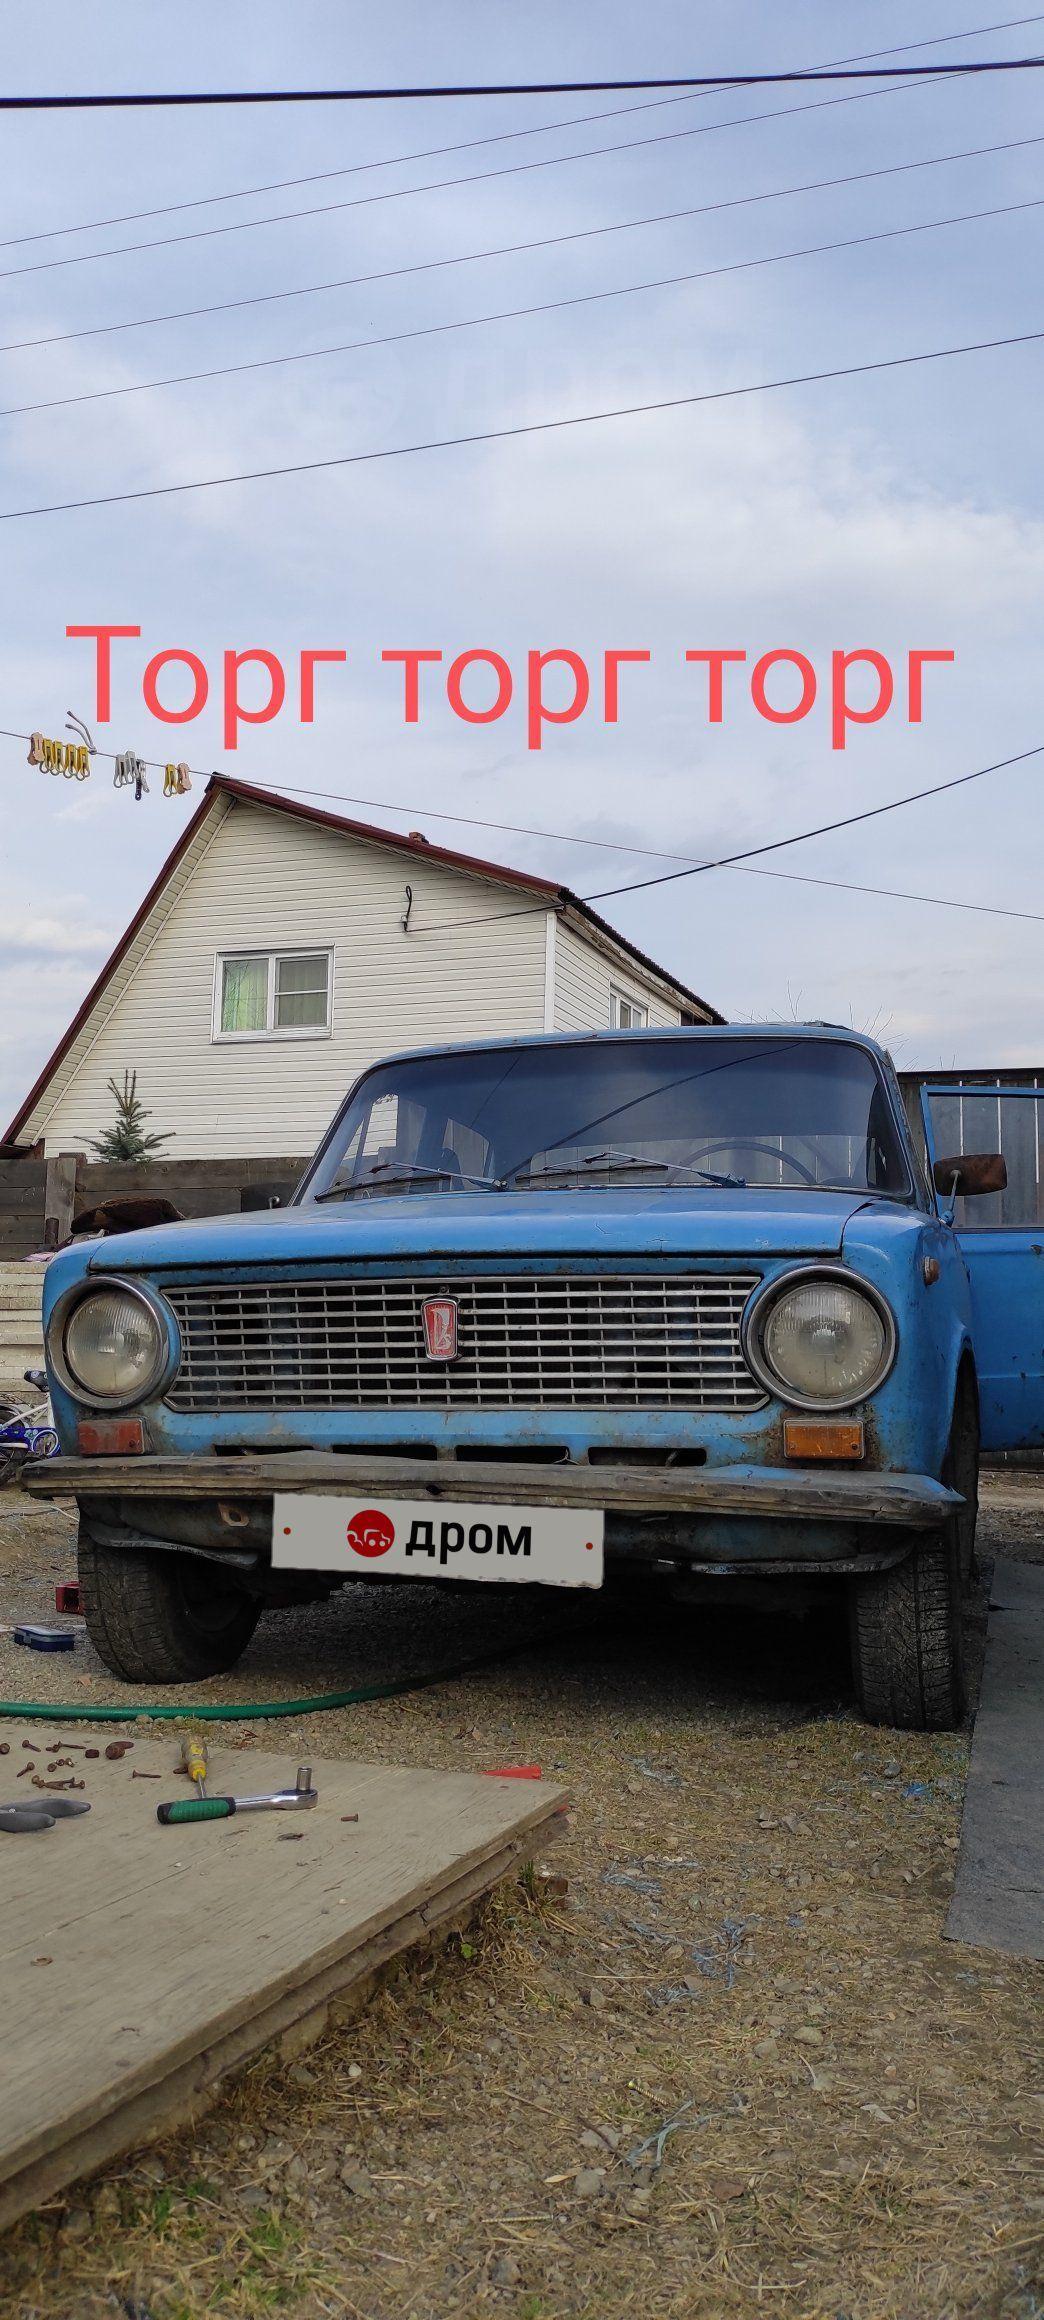 Лада 2101 1975 в Иркутске, Продам копьё на ходу, двига вся настроена  грамотными людьми, гнила, На кросс, эндуро, пит, с пробегом 50000 км, цвет  голубой, мкпп